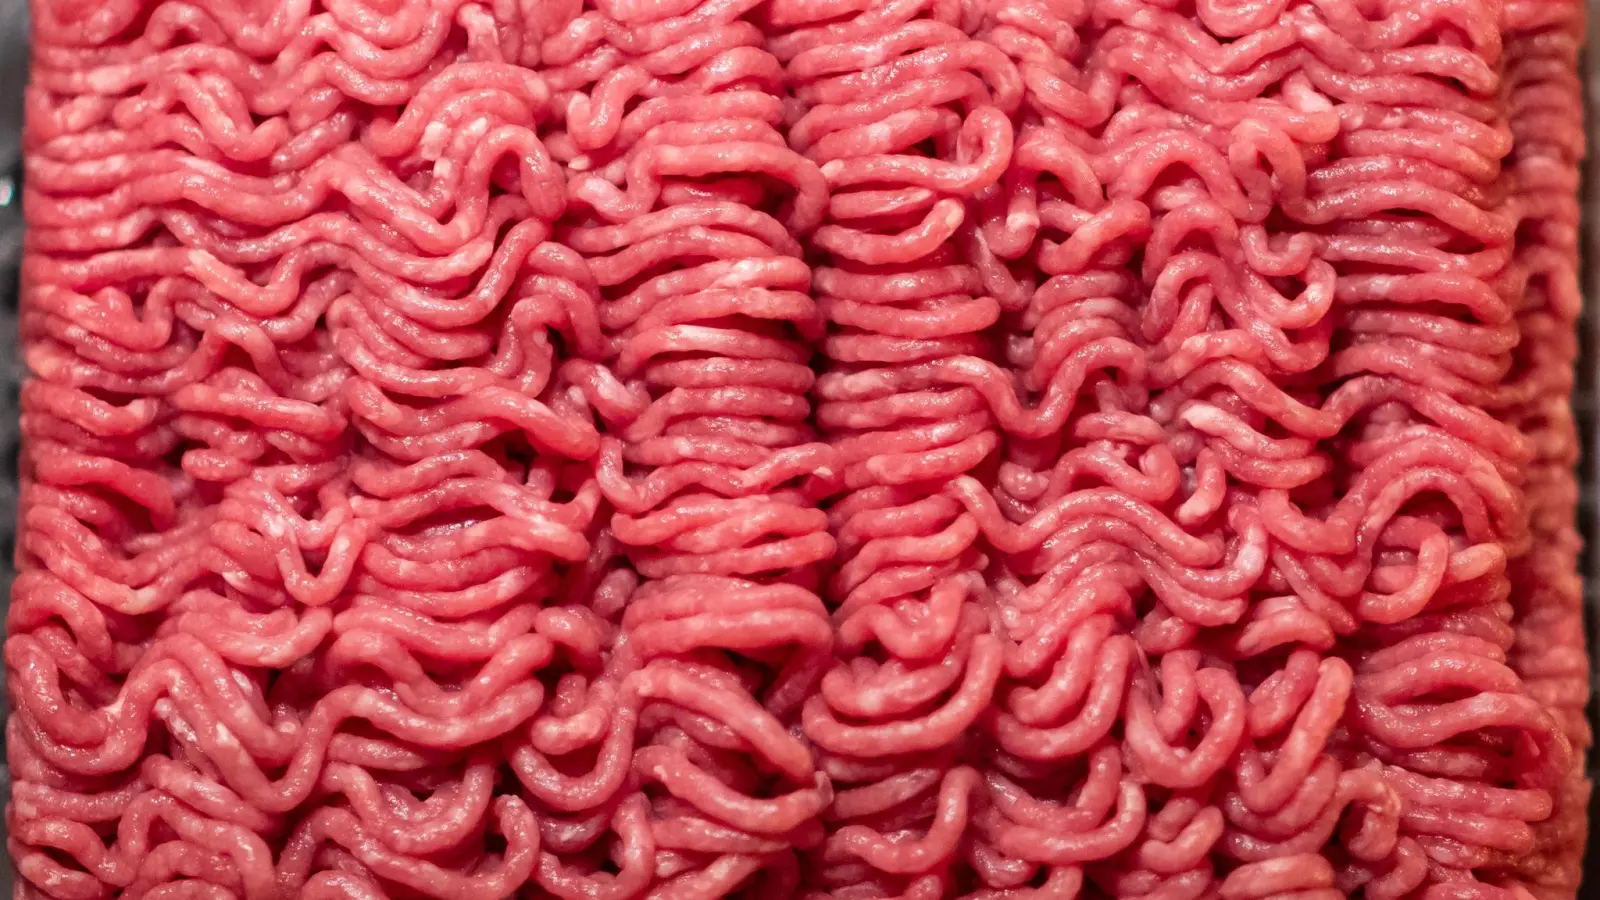 Bio-Hackfleisch vom Rind aus dem Supermarkt liegt in einer Schale. (Foto: Daniel Karmann/dpa)